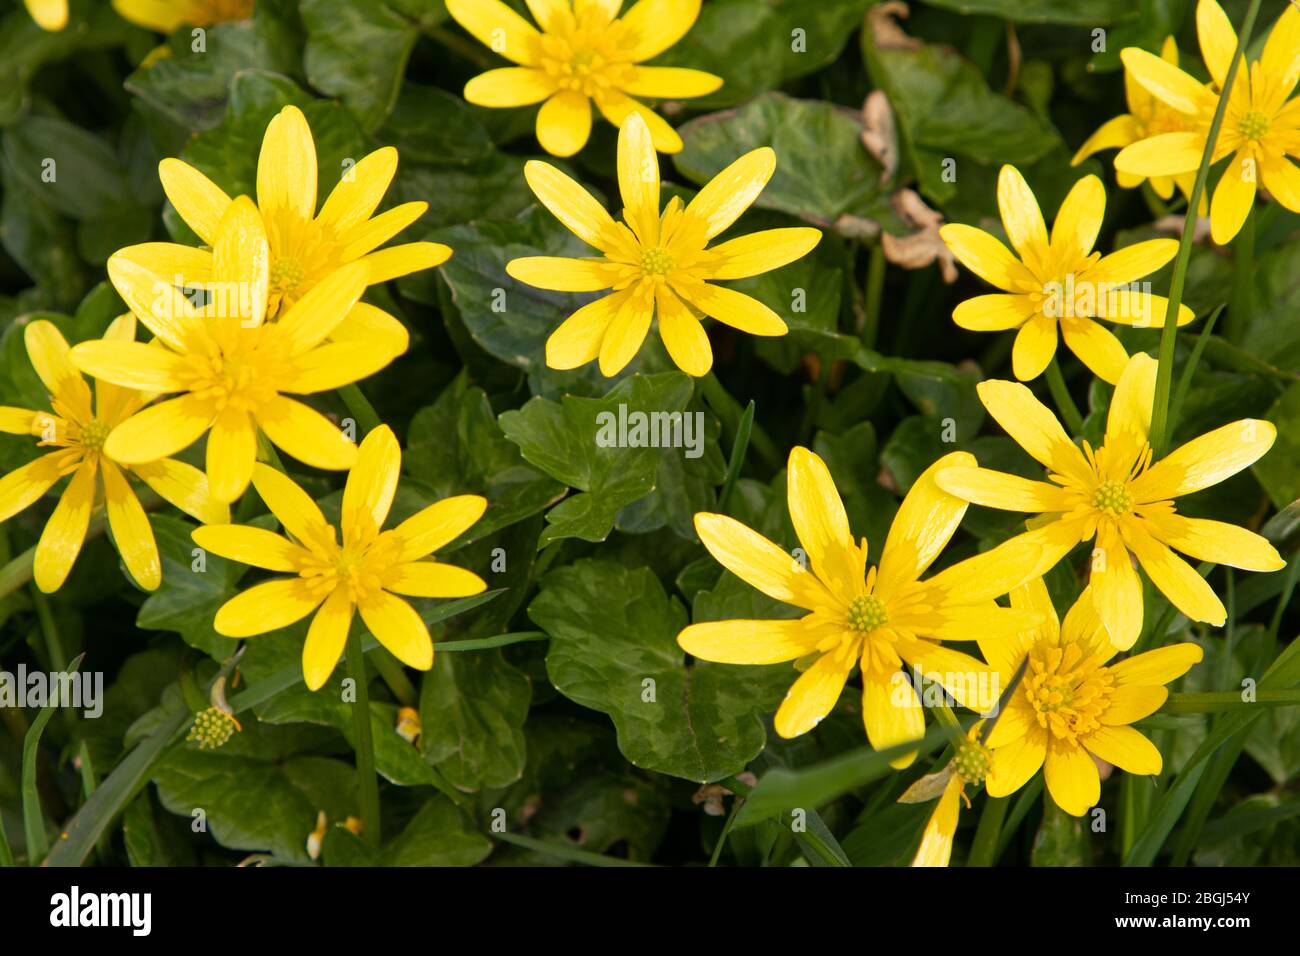 Vibrant yellow celandine flowers Stock Photo